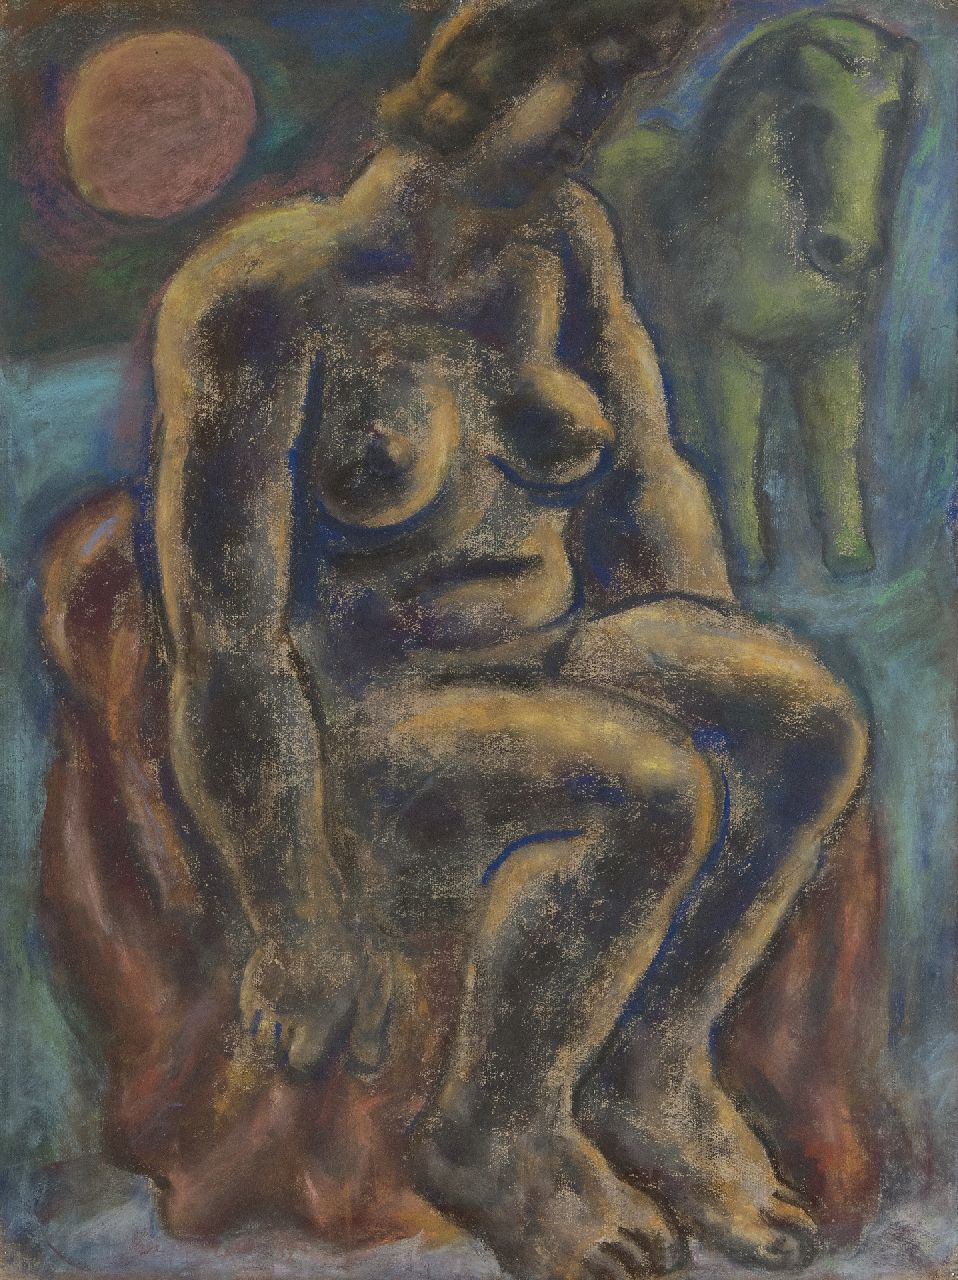 Gestel L.  | Leendert 'Leo' Gestel | Aquarellen en tekeningen te koop aangeboden | Zittende vrouw met paard, pastel op papier 63,0 x 48,0 cm, gesigneerd linksonder (resten) en gedateerd 1932 (vaag)